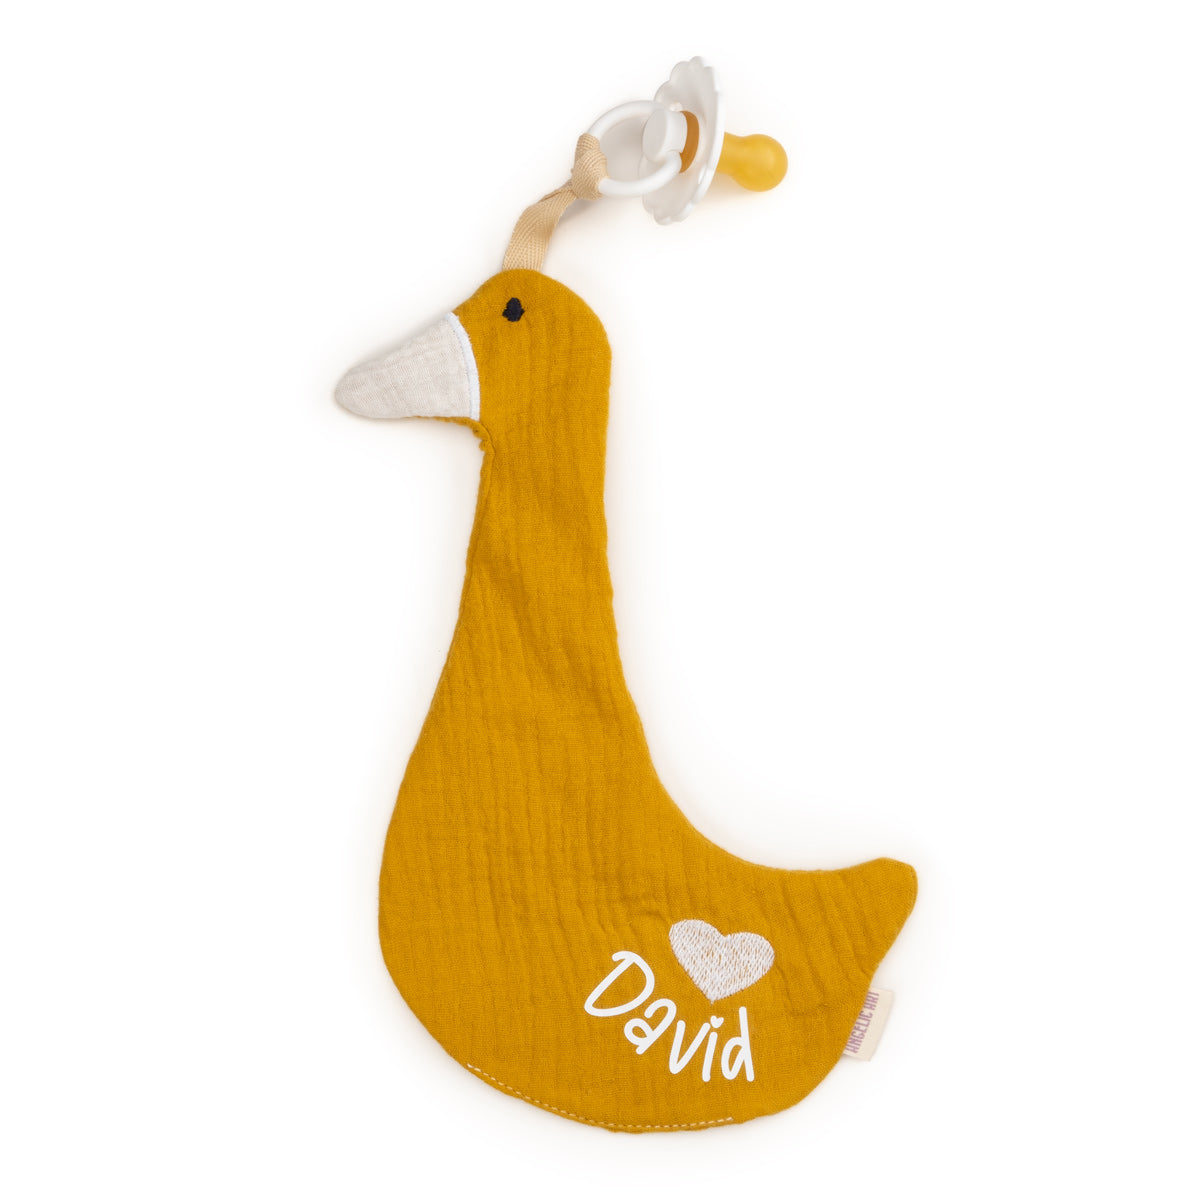 Nuckelkette aus Musselin, Anhänger für Nuckelkette personalisiert mit Wunschnamen, Motiven Ente und Reh. Für Babys, Jungs, Mädchen. (Senfgelb Ente)